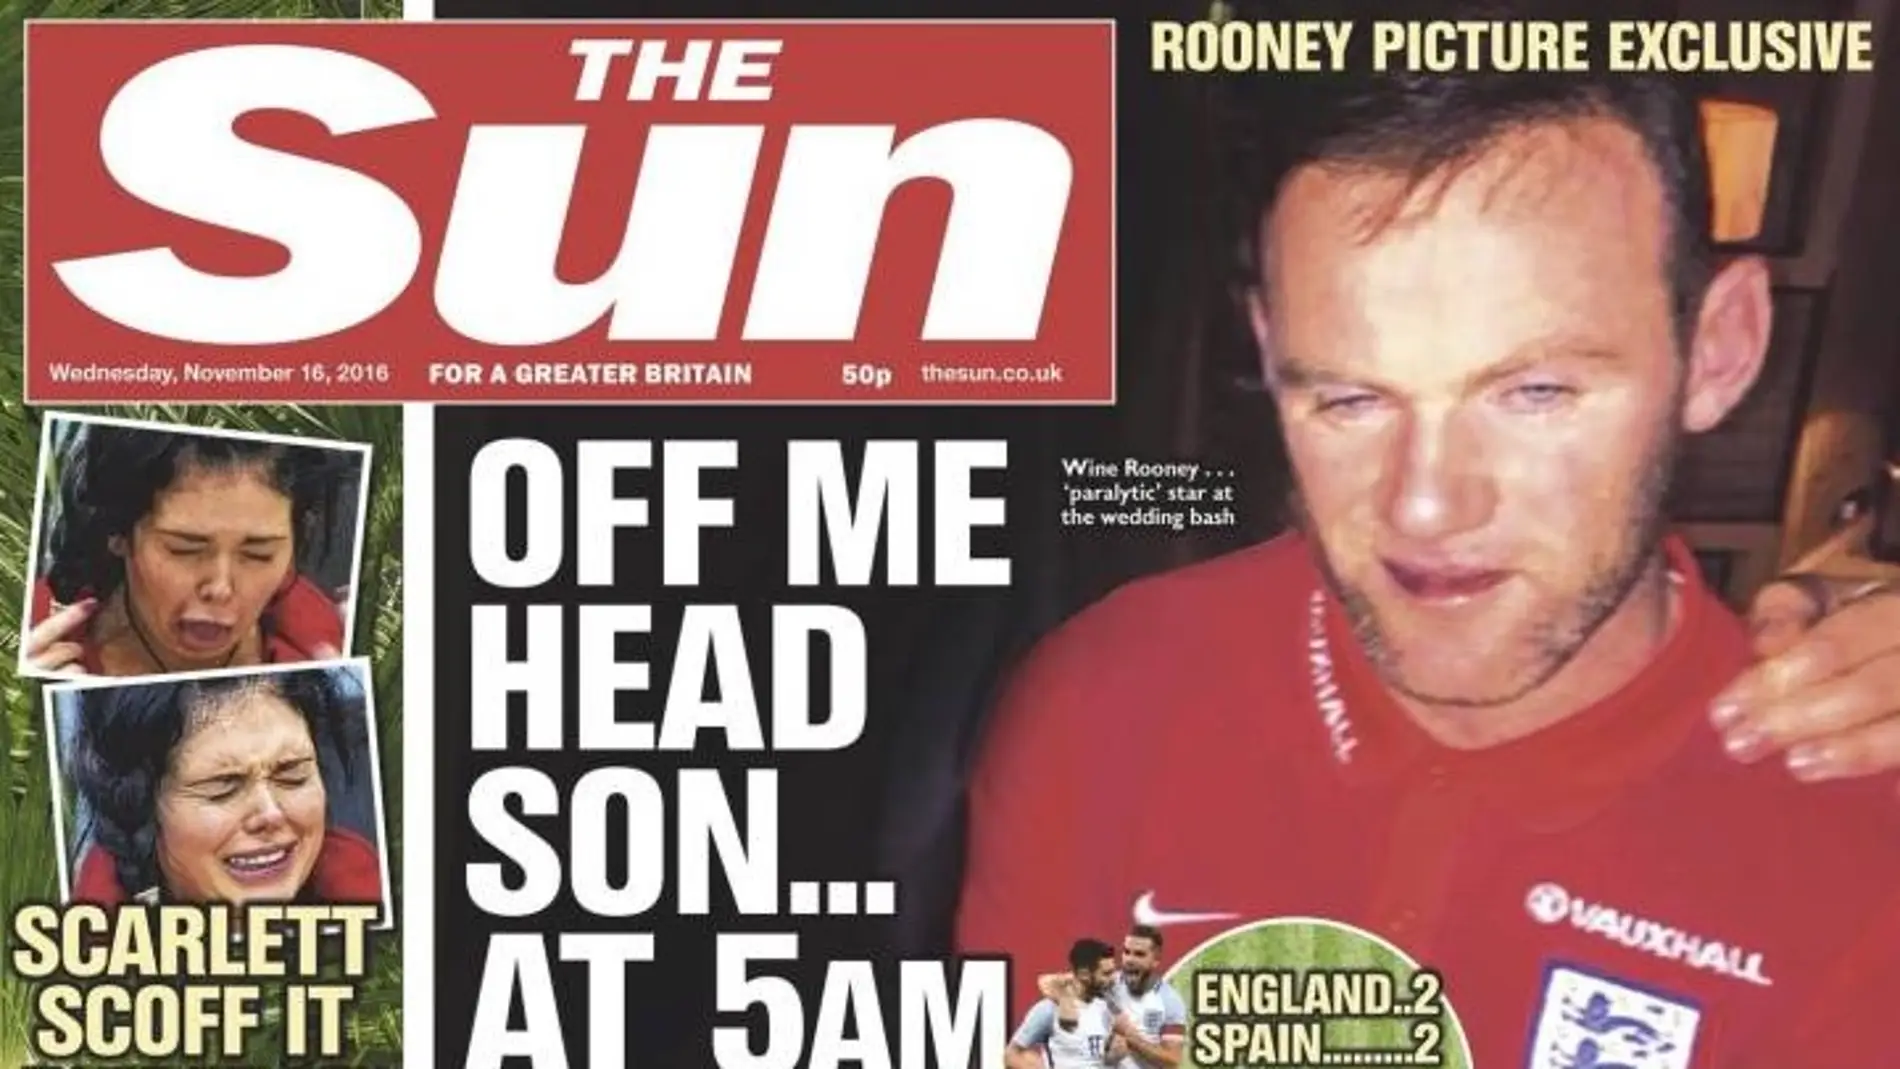 La imagen de Wayne Rooney borracho en la portada de 'The Sun'